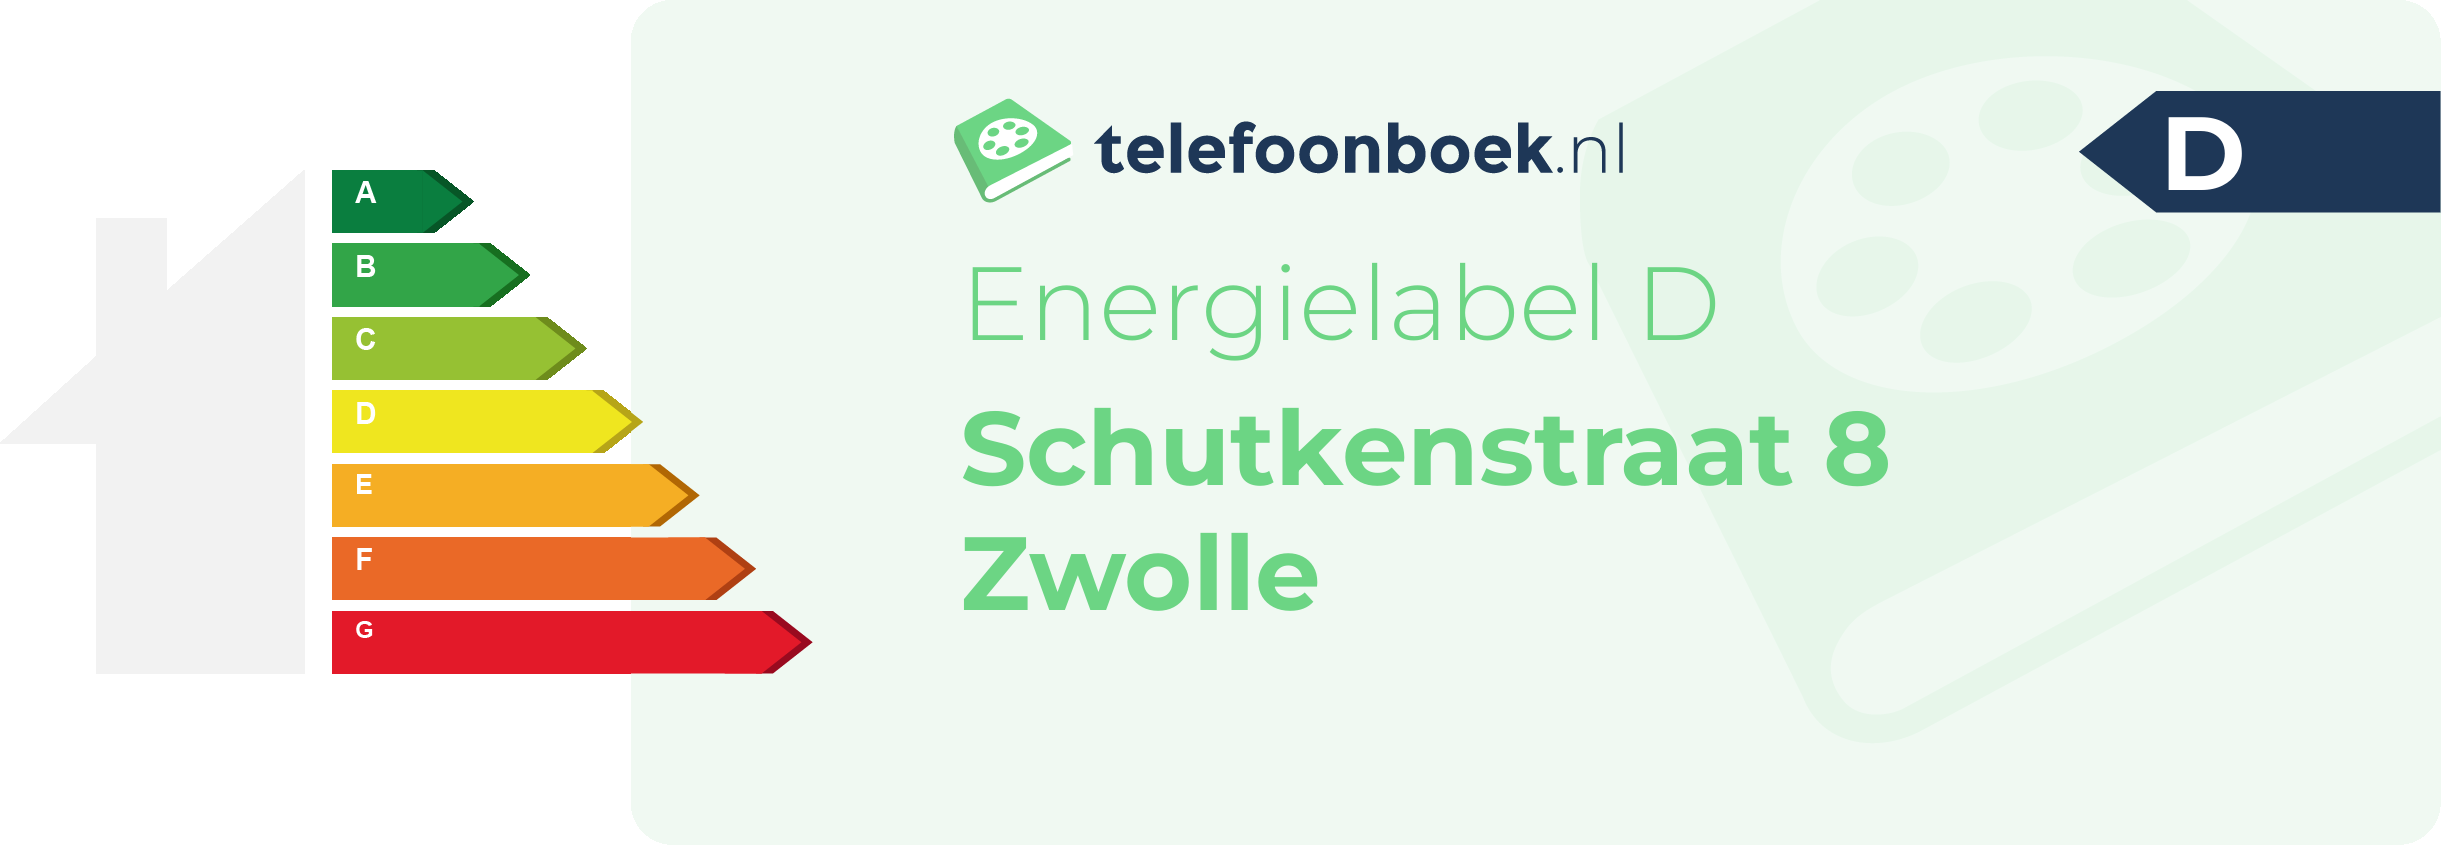 Energielabel Schutkenstraat 8 Zwolle